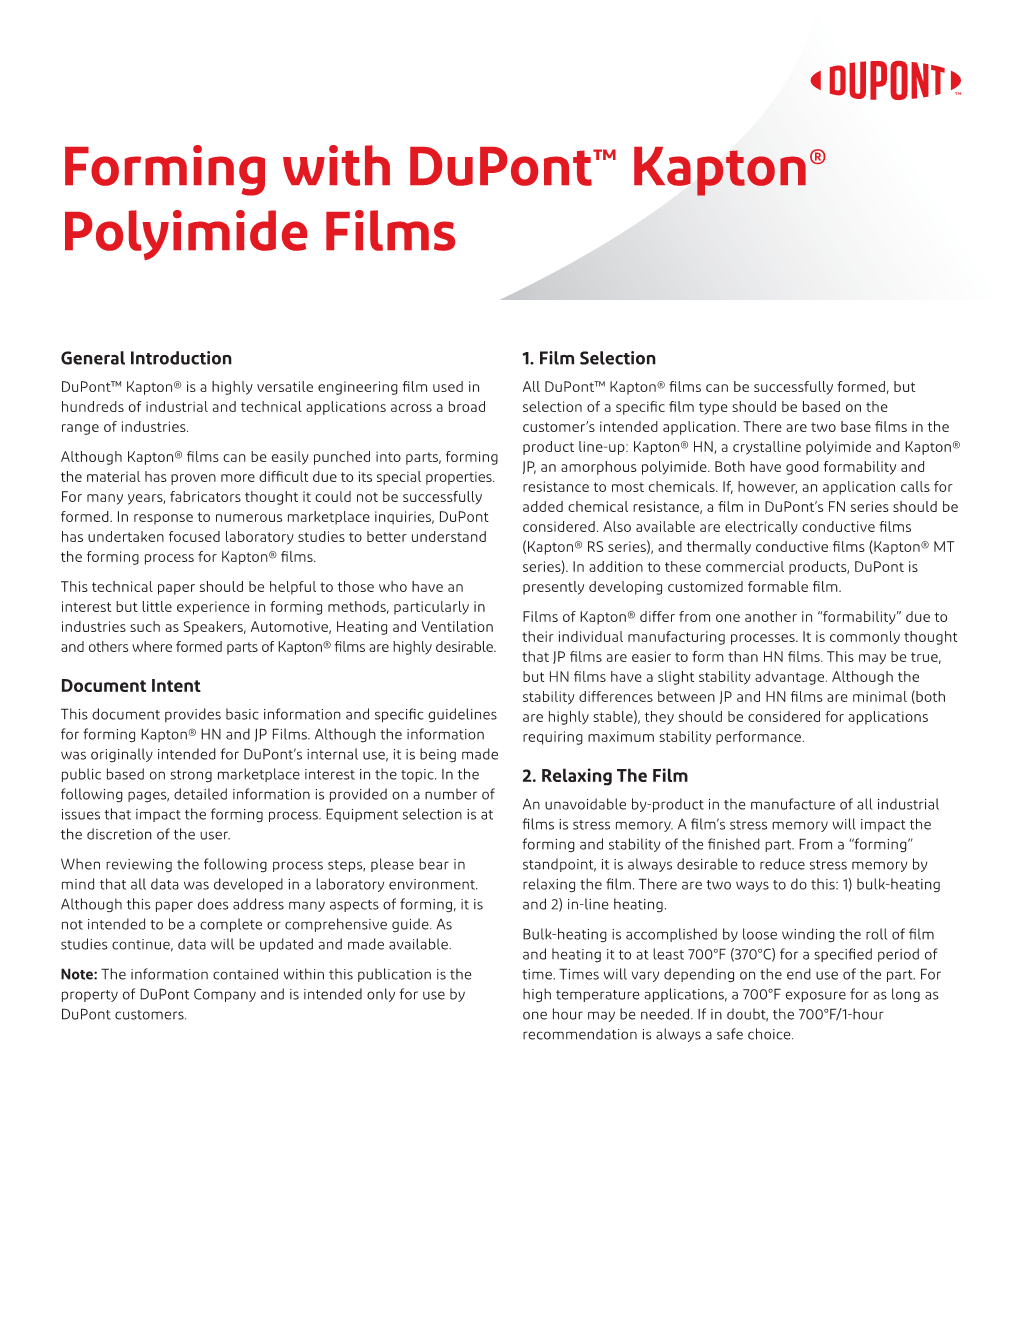 Kapton® Forming Guide